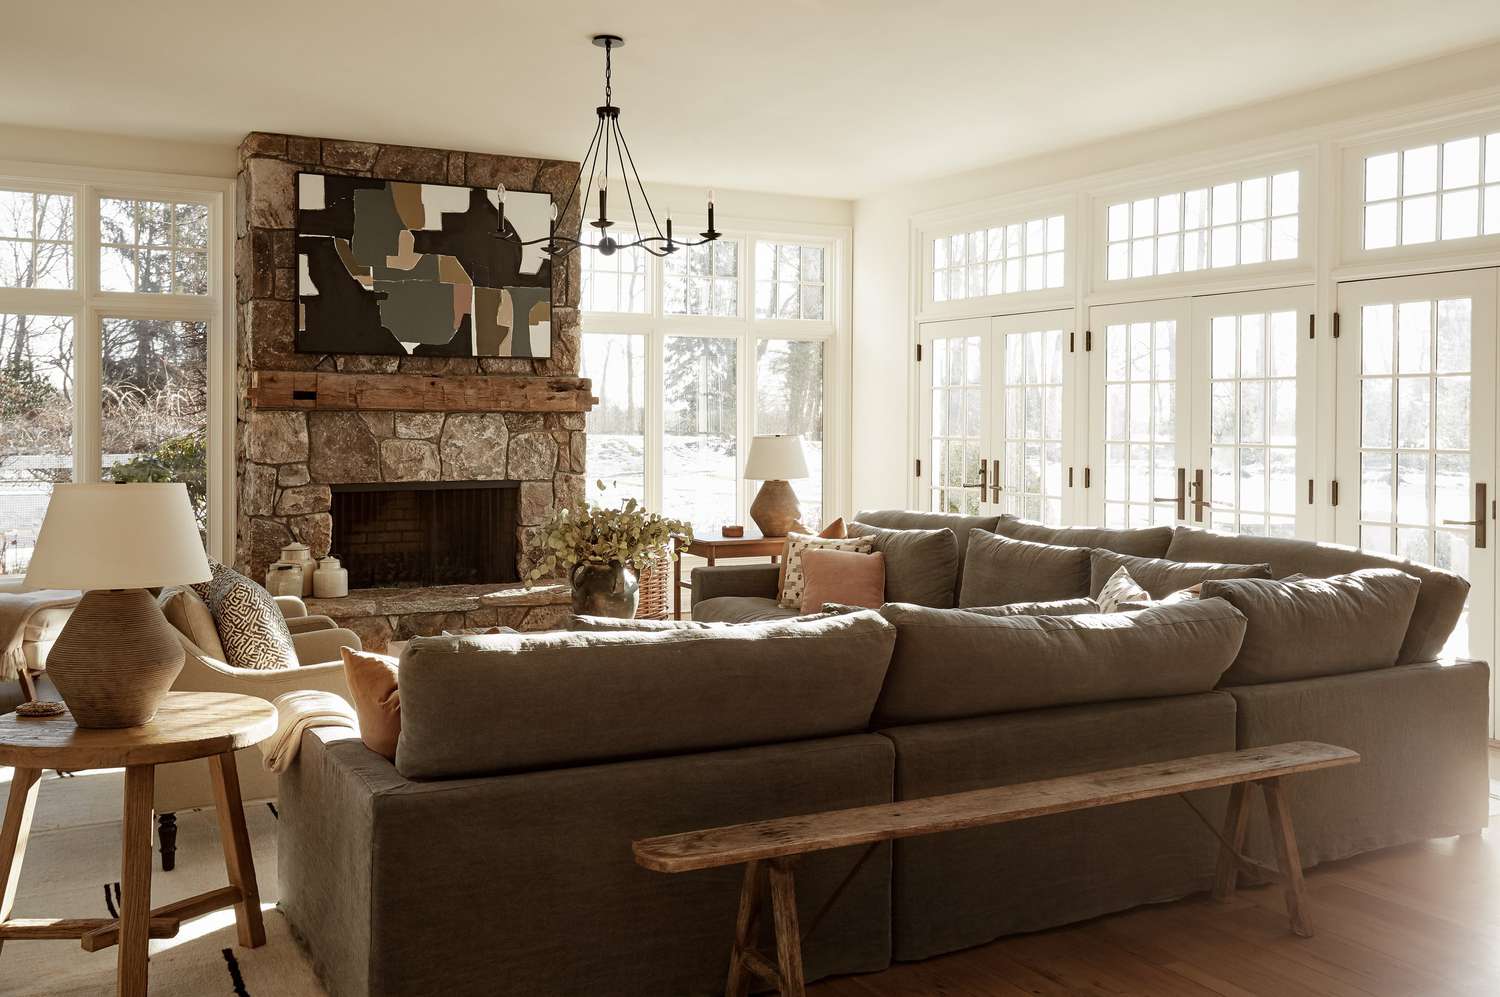 Interior de casa cálido y acogedor en invierno.